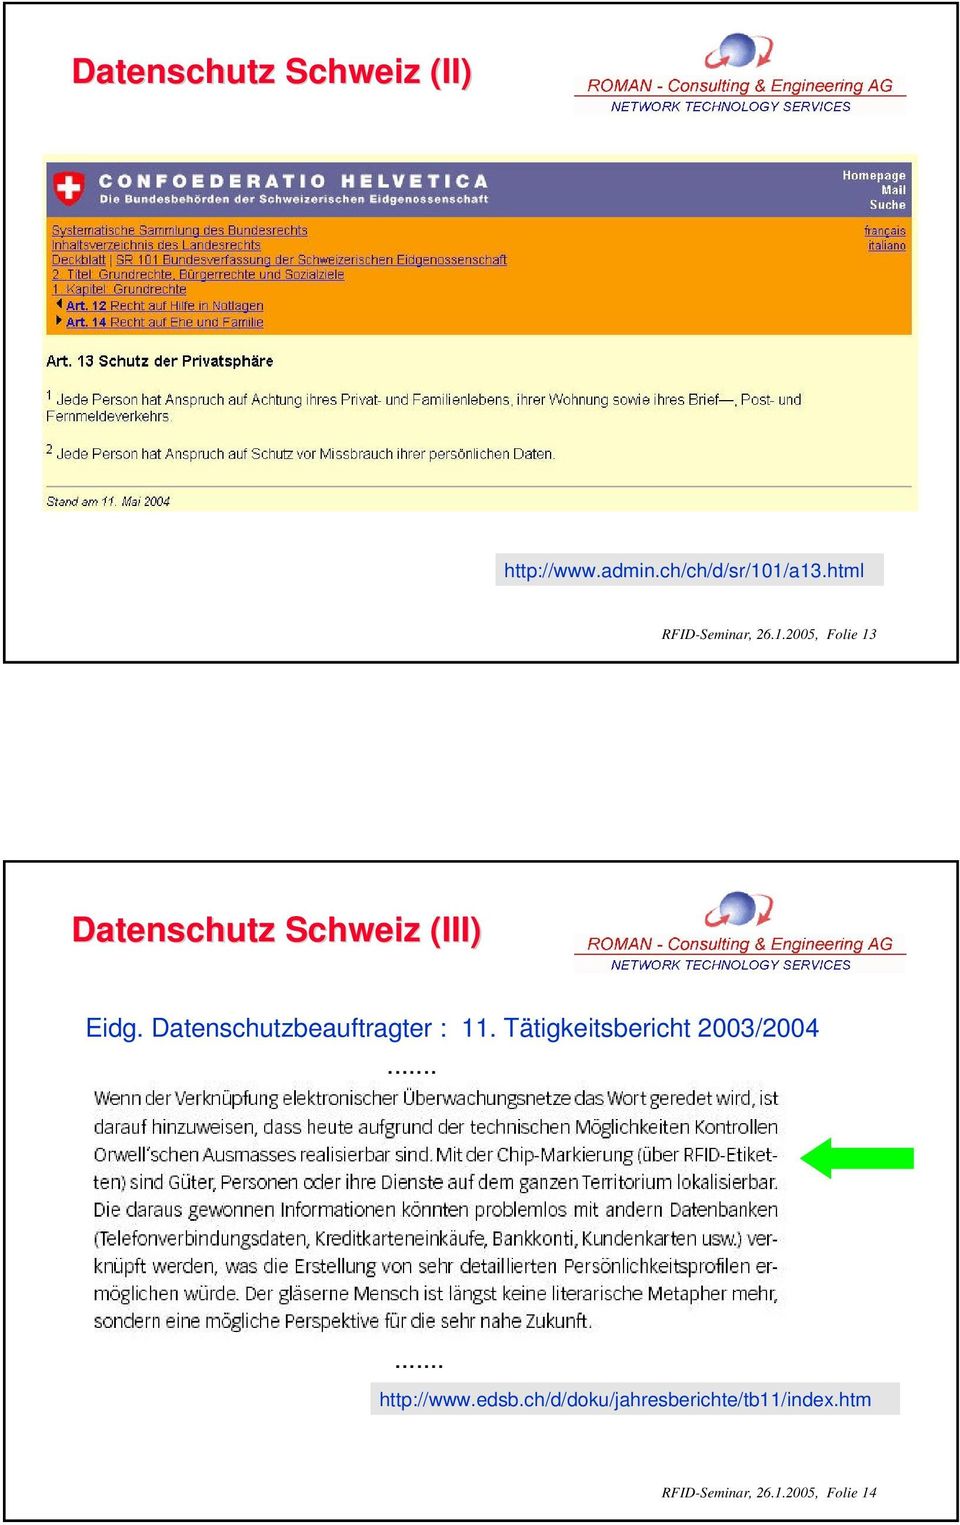 Datenschutzbeauftragter : 11. Tätigkeitsbericht 2003/2004...... http://www.